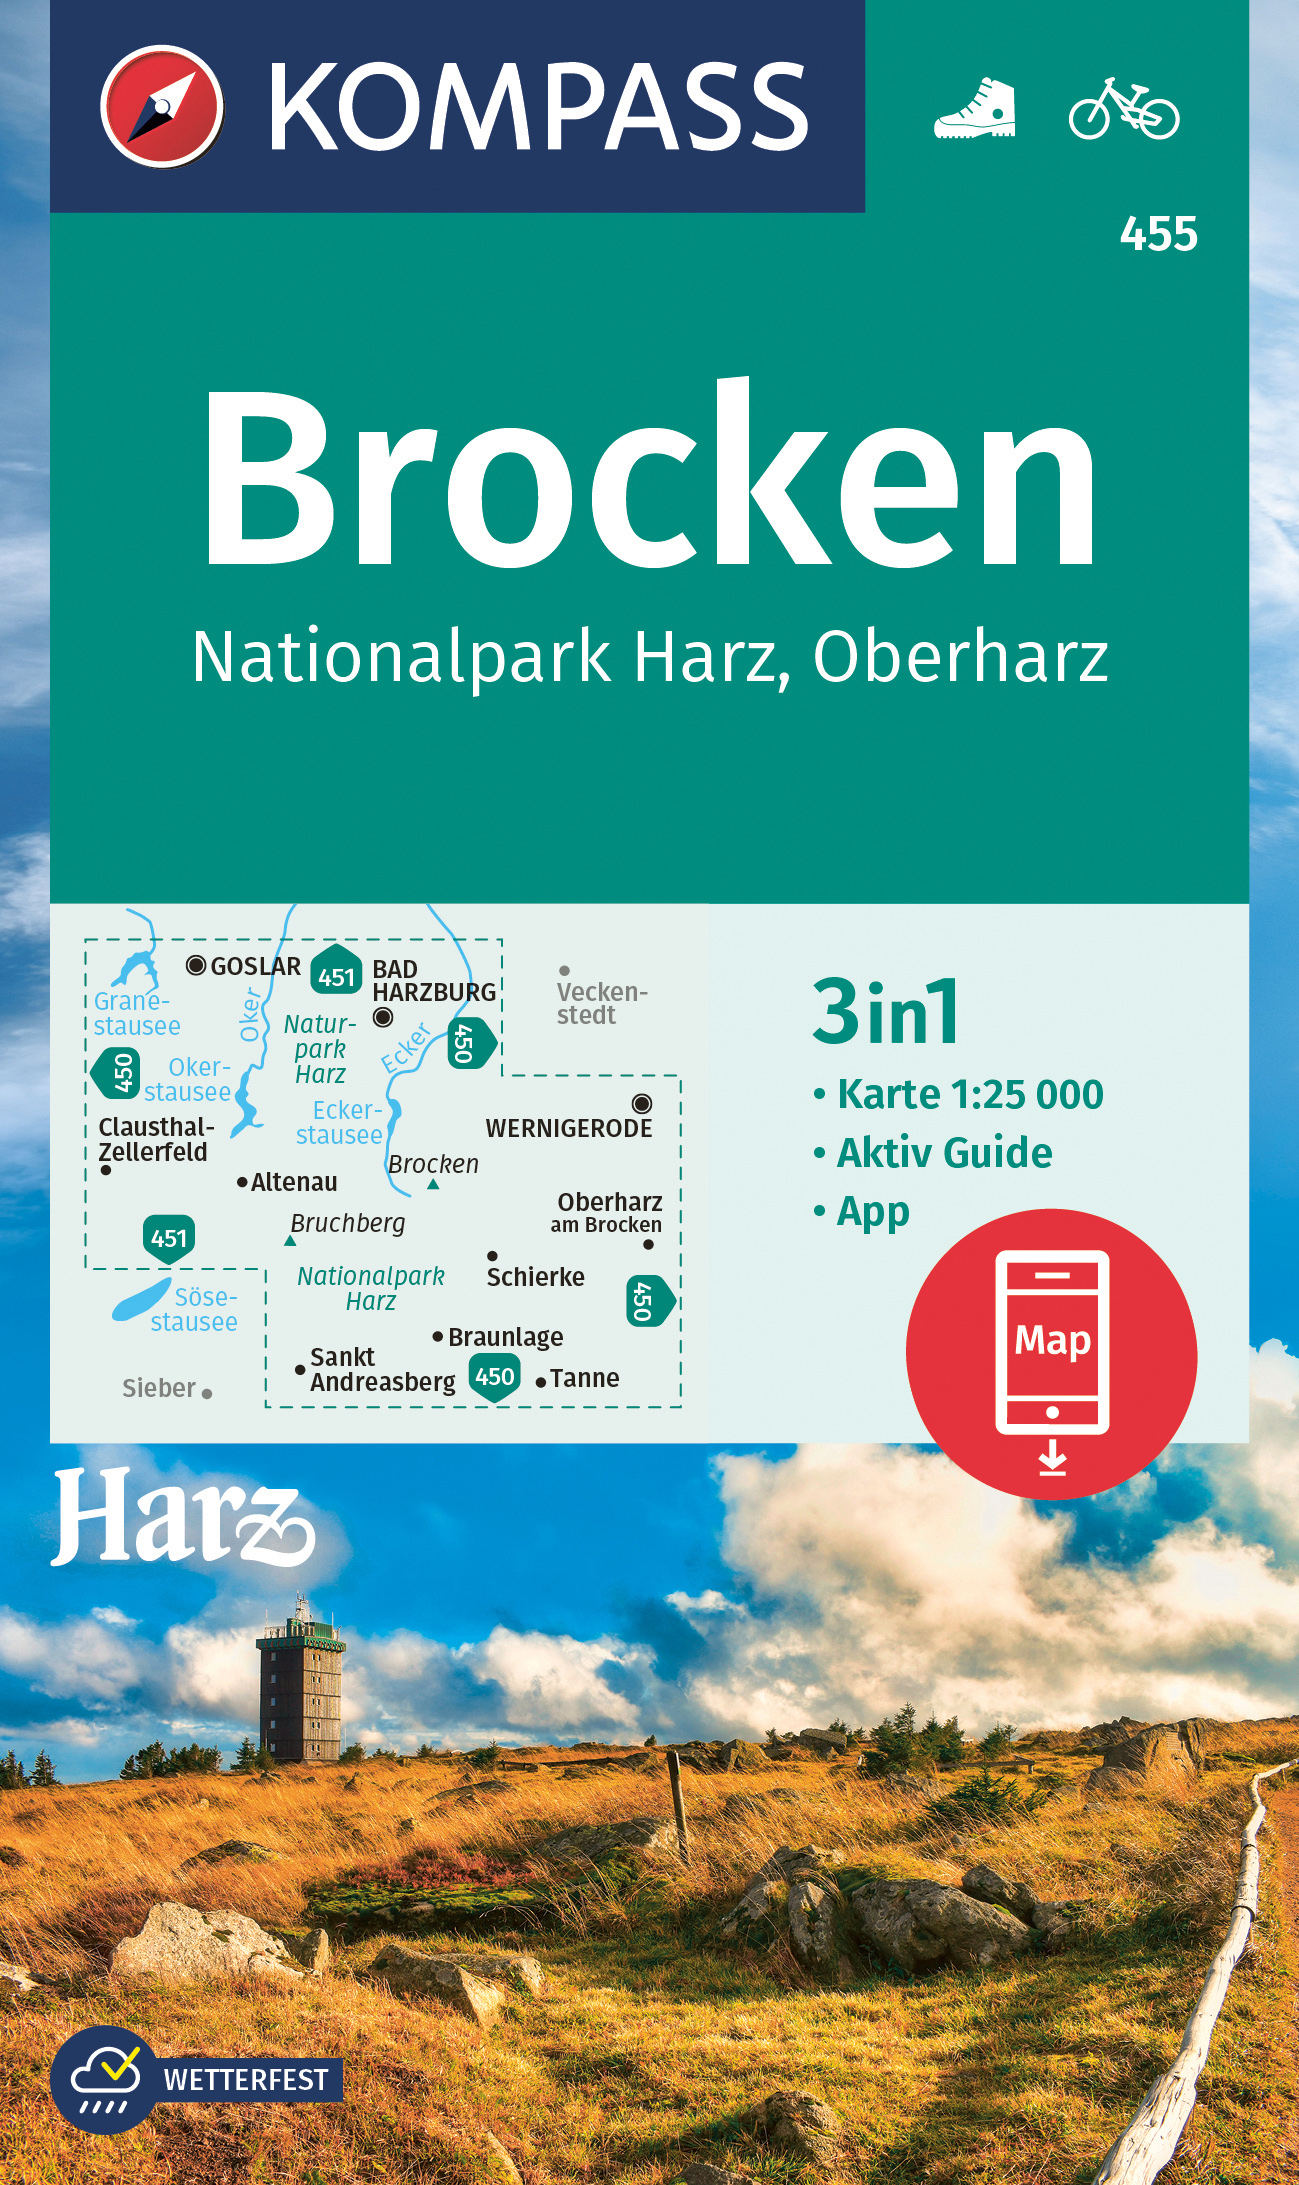 Kompass Rund um den Brocken (Nationalpark Harz) 1:25t.